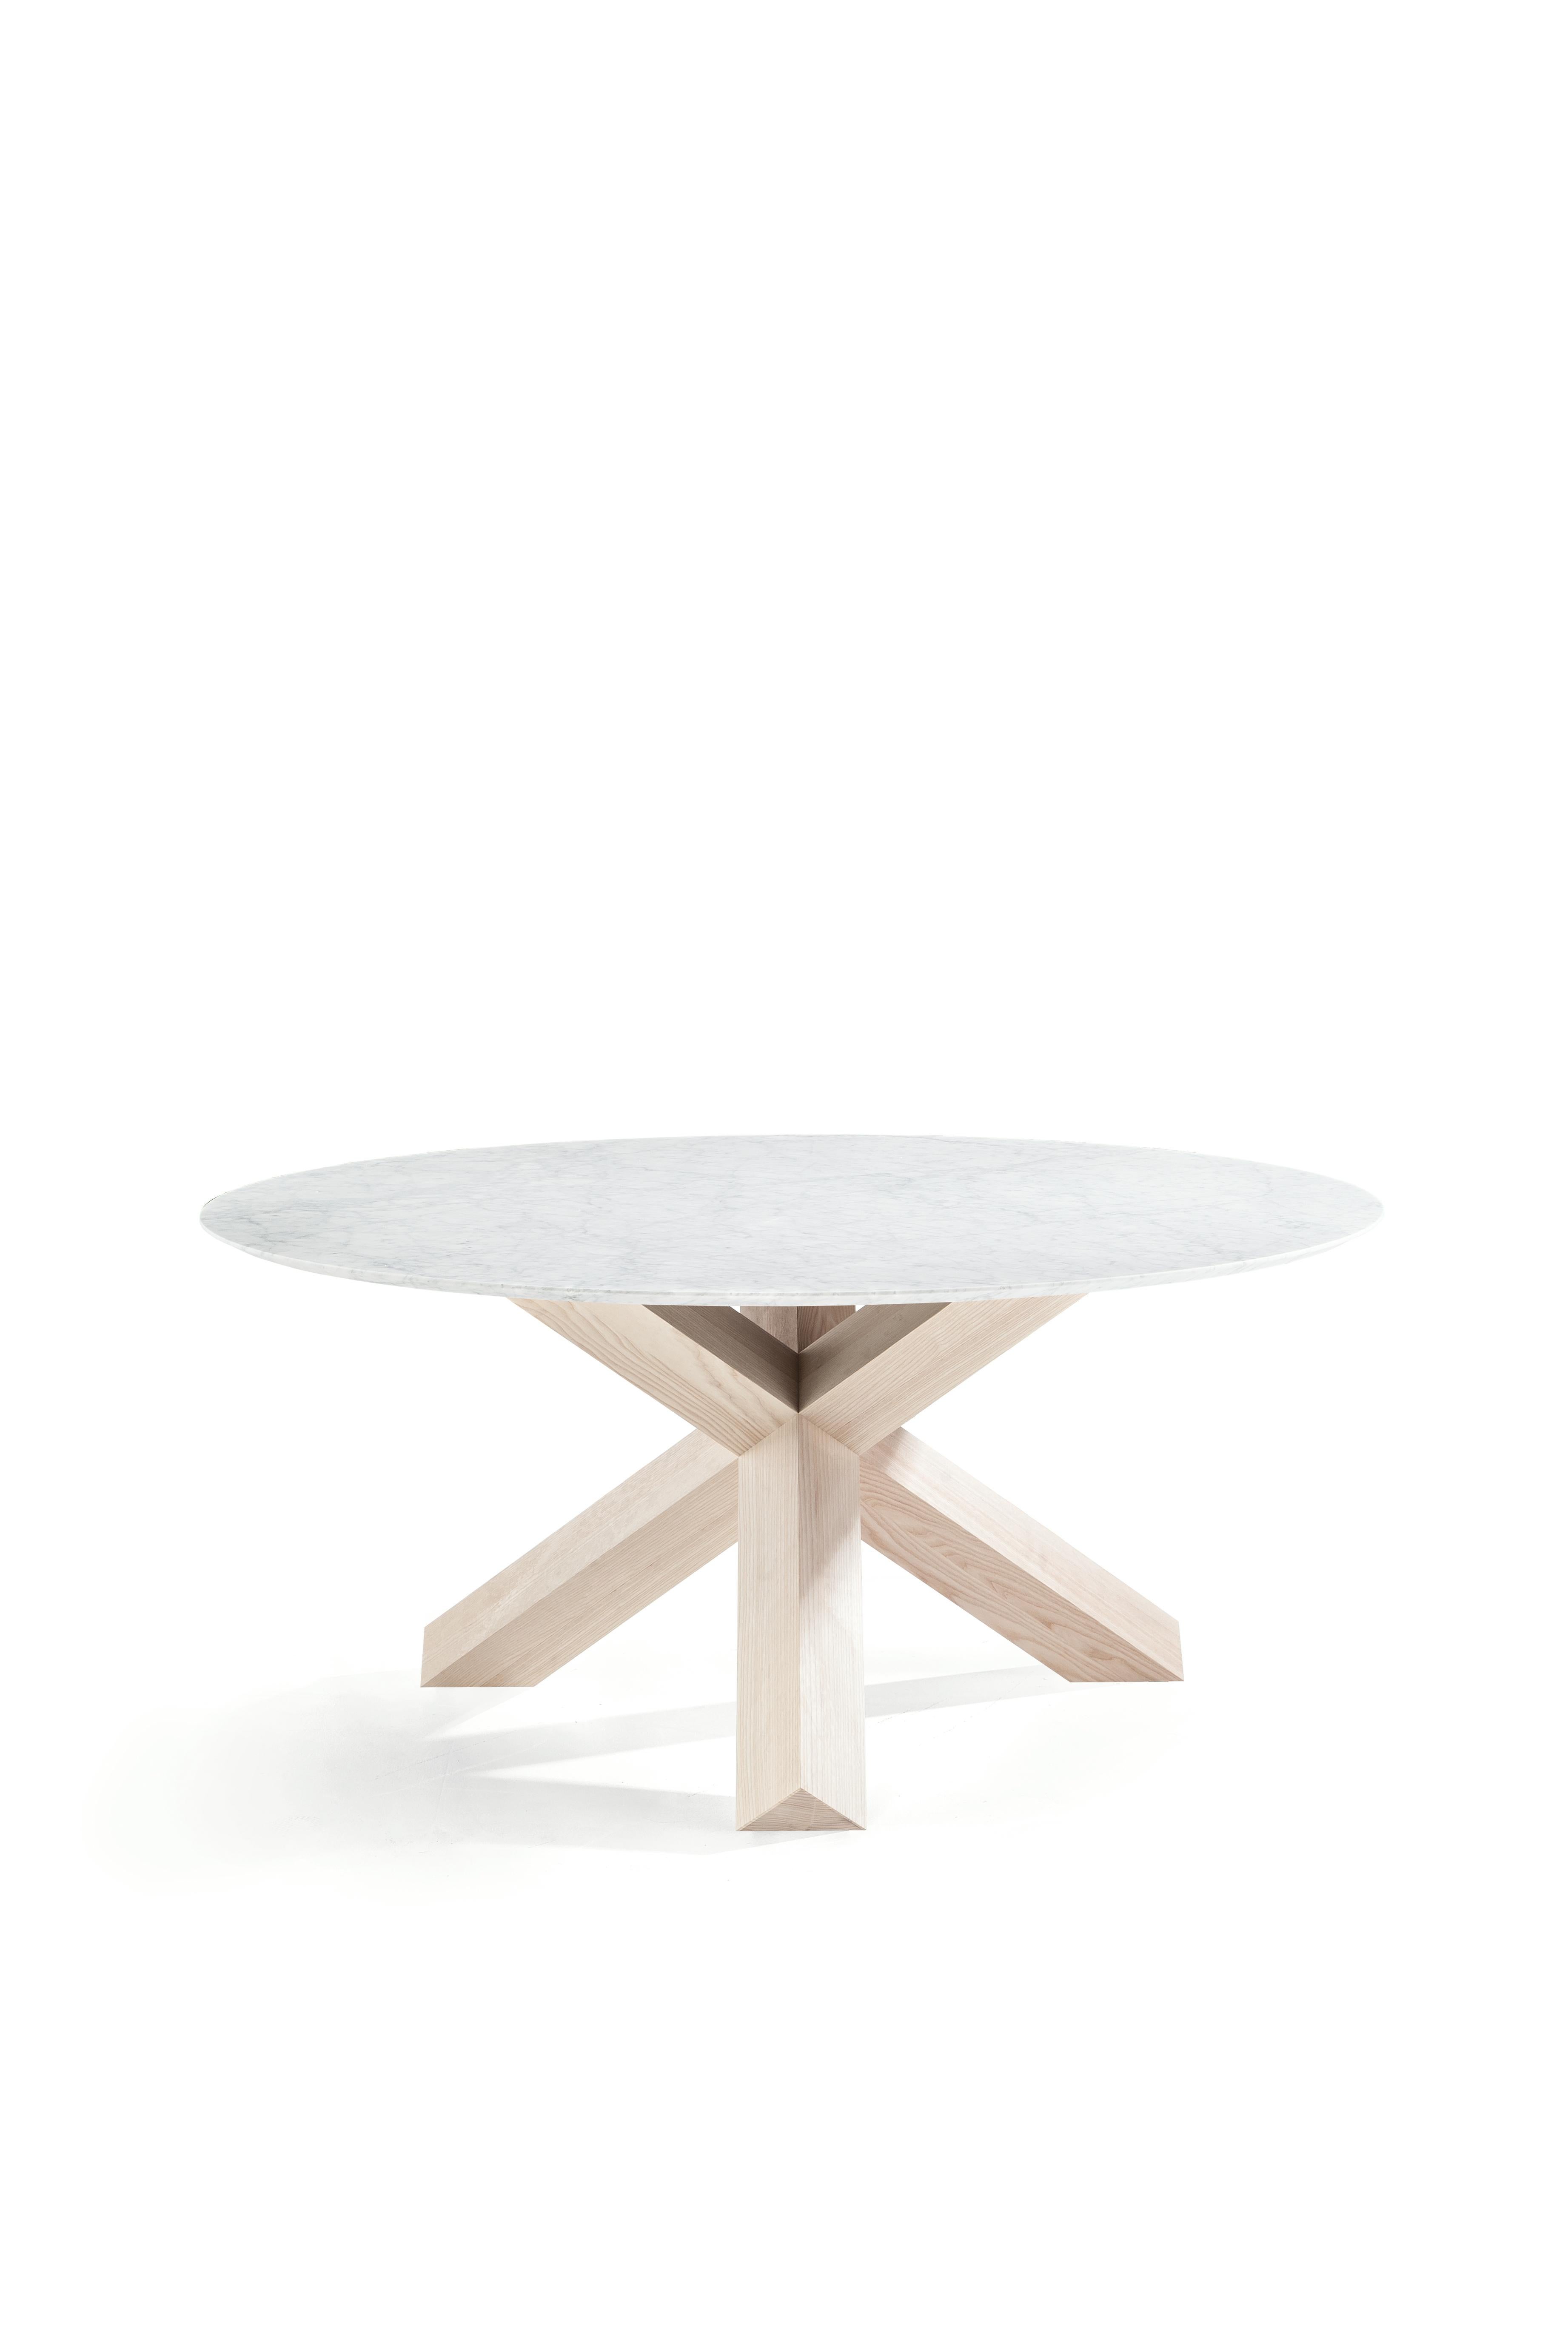 Italian Mario Bellini La Rotonda Table by Cassina For Sale